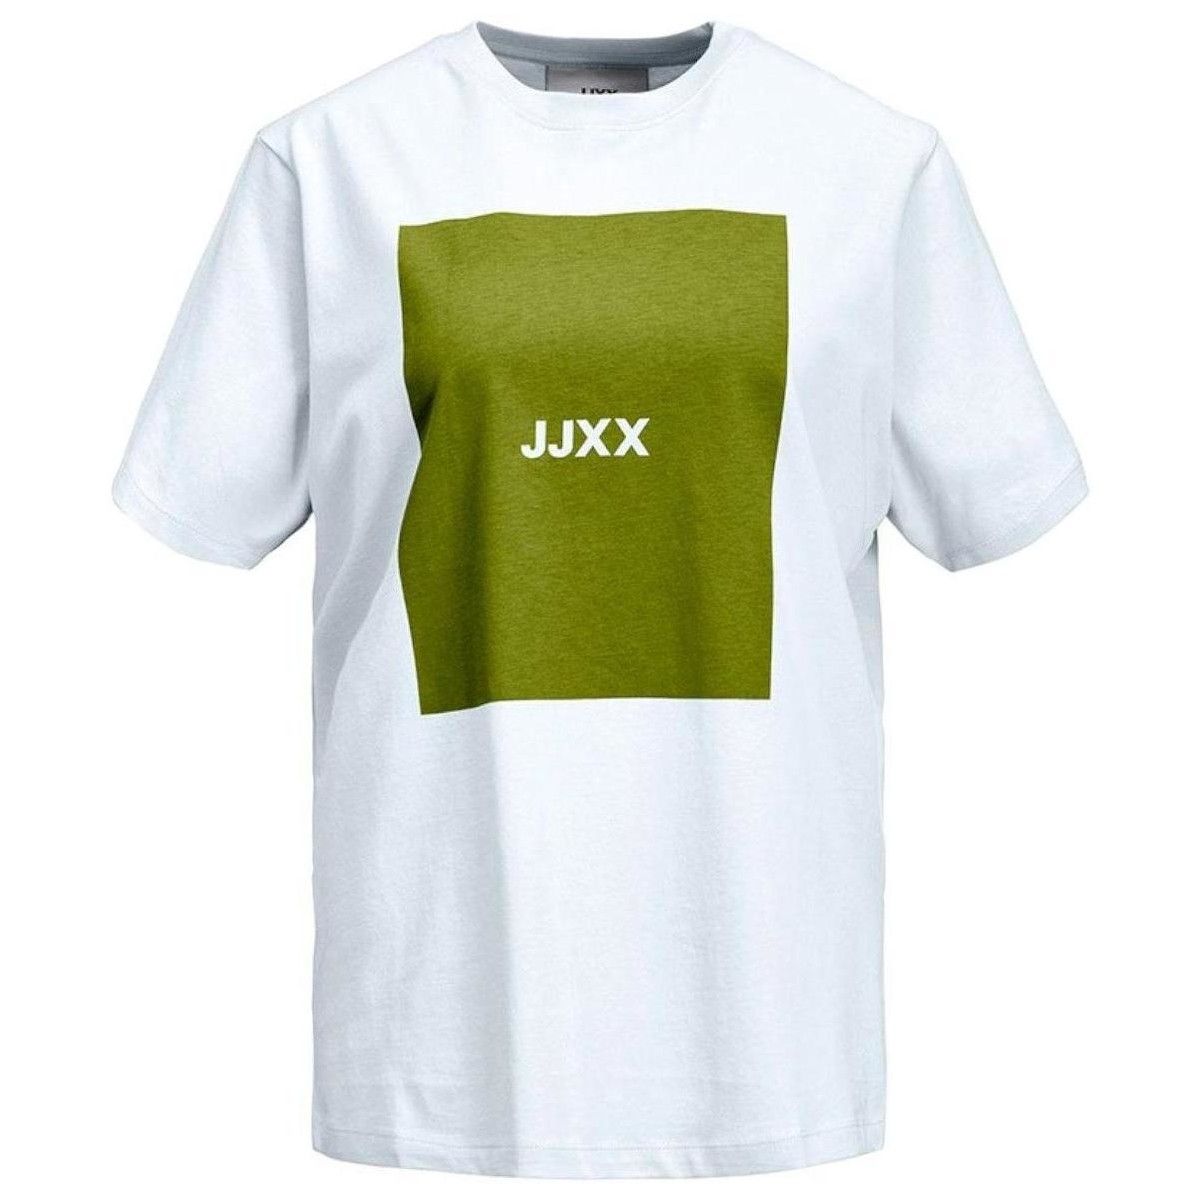 vaatteet Naiset Lyhythihainen t-paita Jjxx  Valkoinen